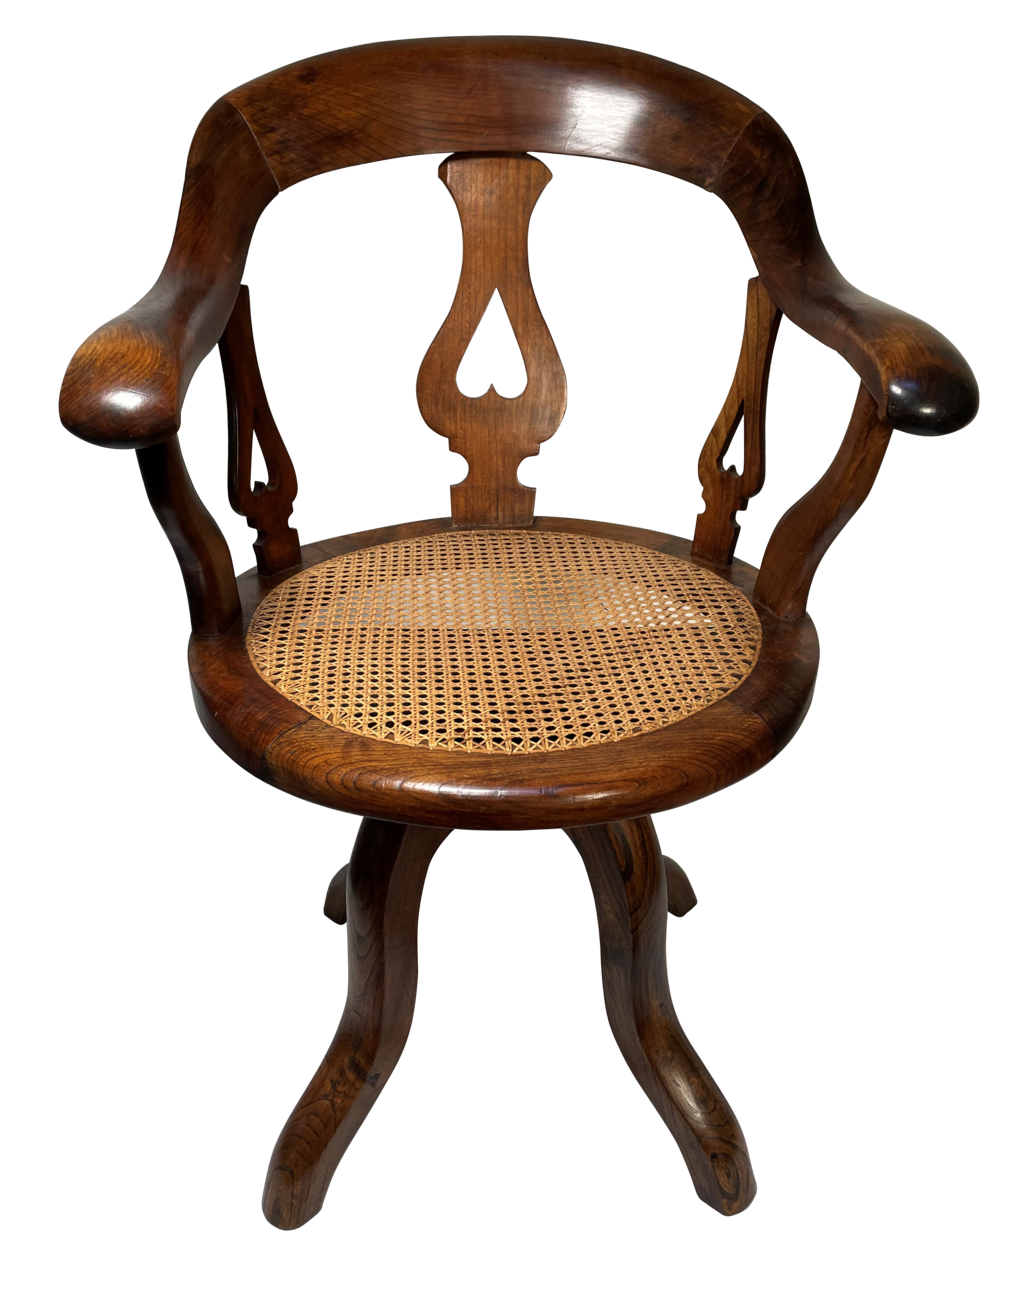 Edwardian Walnut Cane Seated Desk Chair with Swivel Mechanism